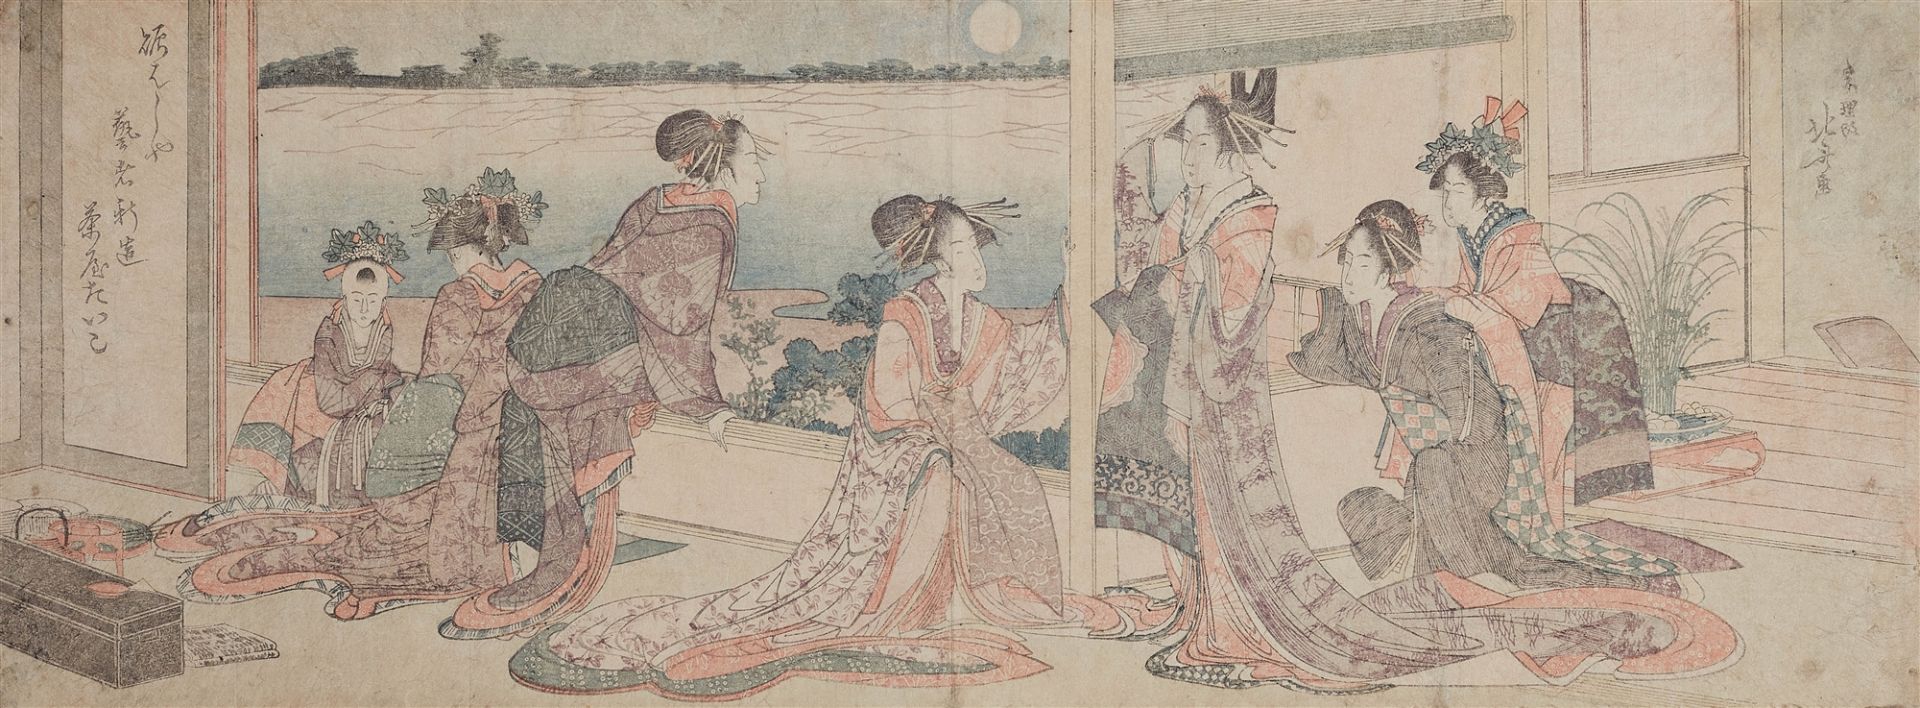 Katsushika Hokusai, Eine Gruppe von Kurtisanen, Geisha, shinzô und kamuro